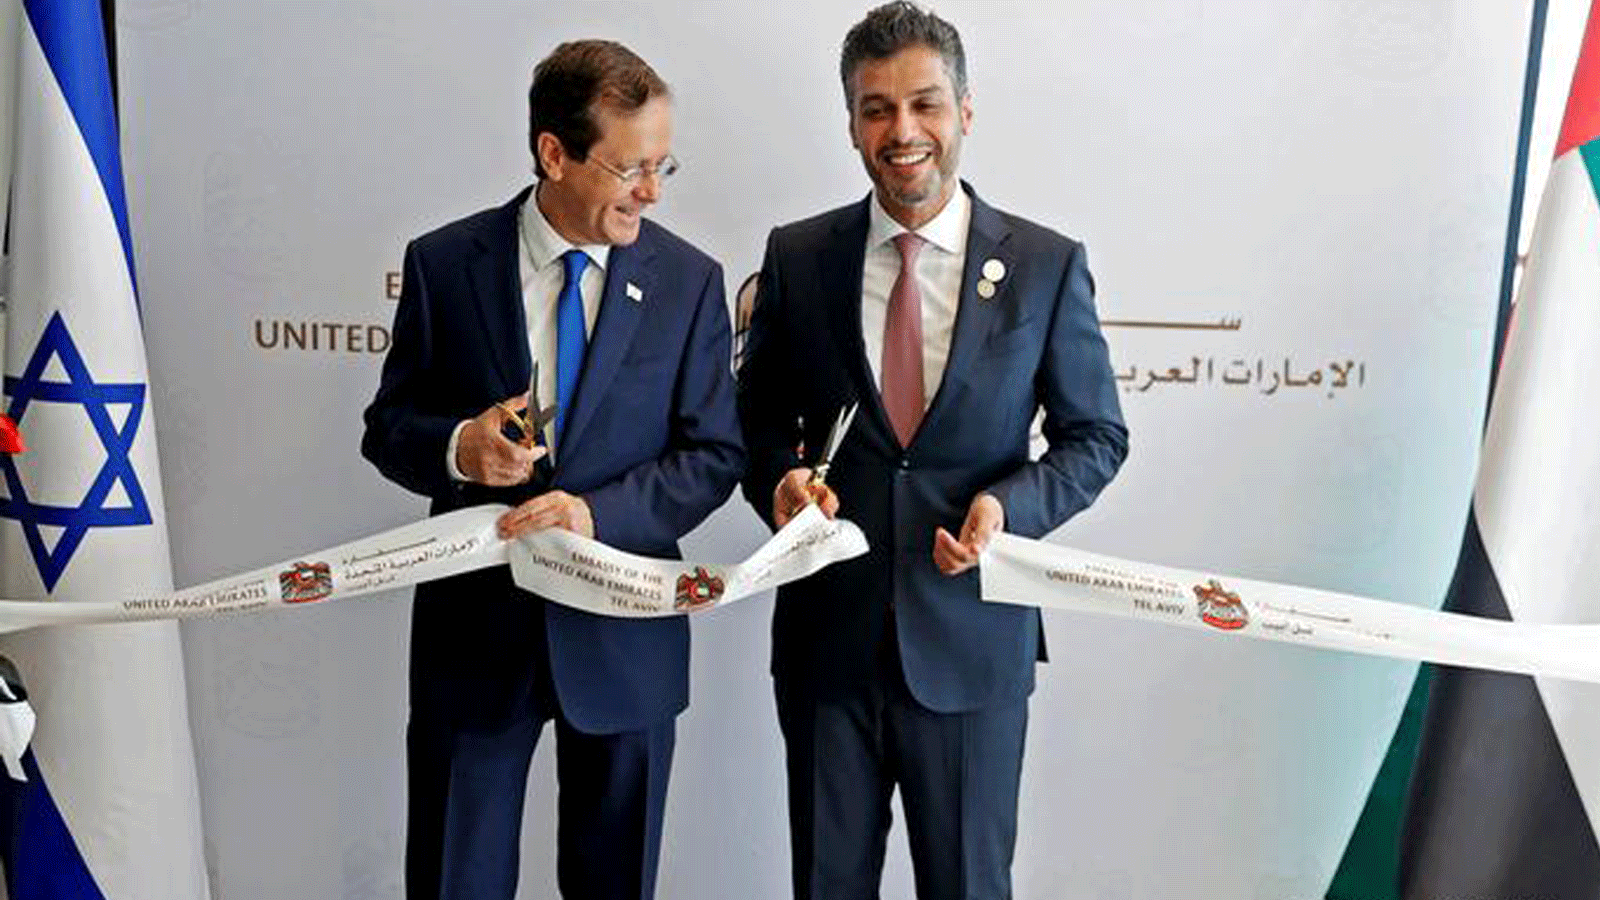 الرئيس الإسرائيلي إسحاق هرتسوغ (إلى اليسار) والسفير الإماراتي محمد الخاجة يفتتحان سفارة دولة الإمارات العربية المتحدة الجديدة في تل أبيب. 14 تموز/ يوليو 2021